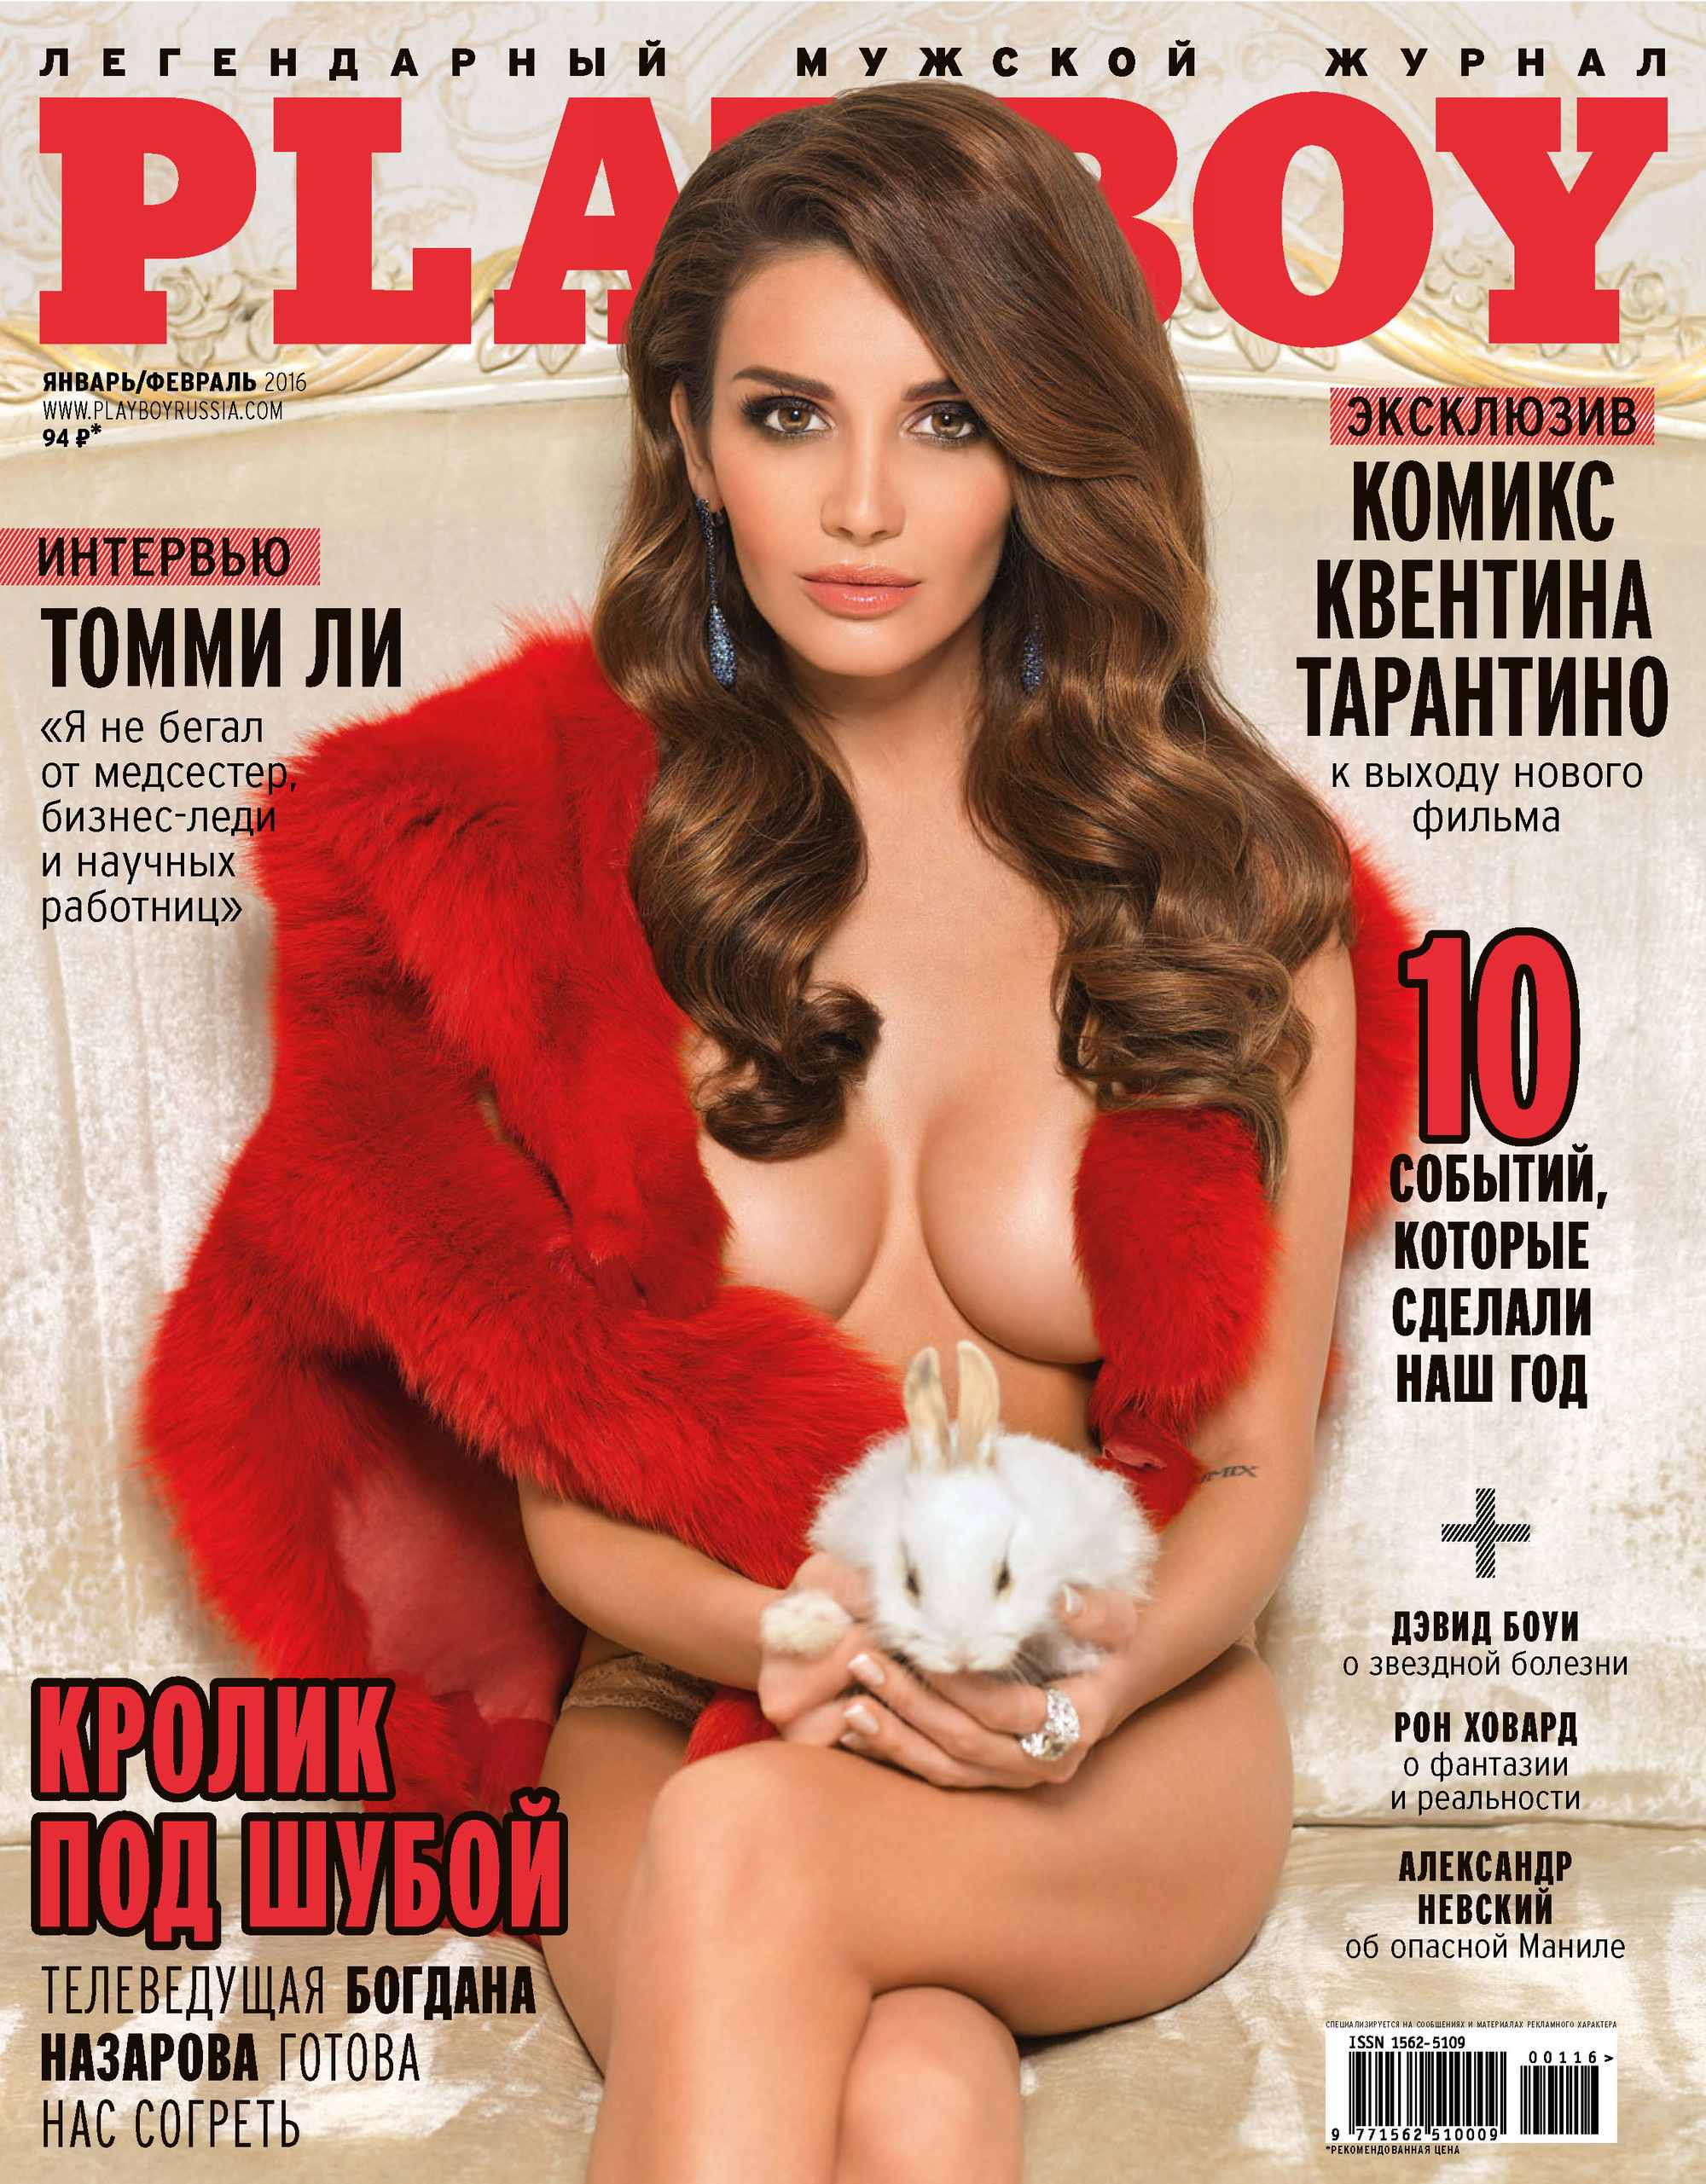 (фото 18+) 55 обложек главного конкурента журнала Playboy из Европы - #diez на русском